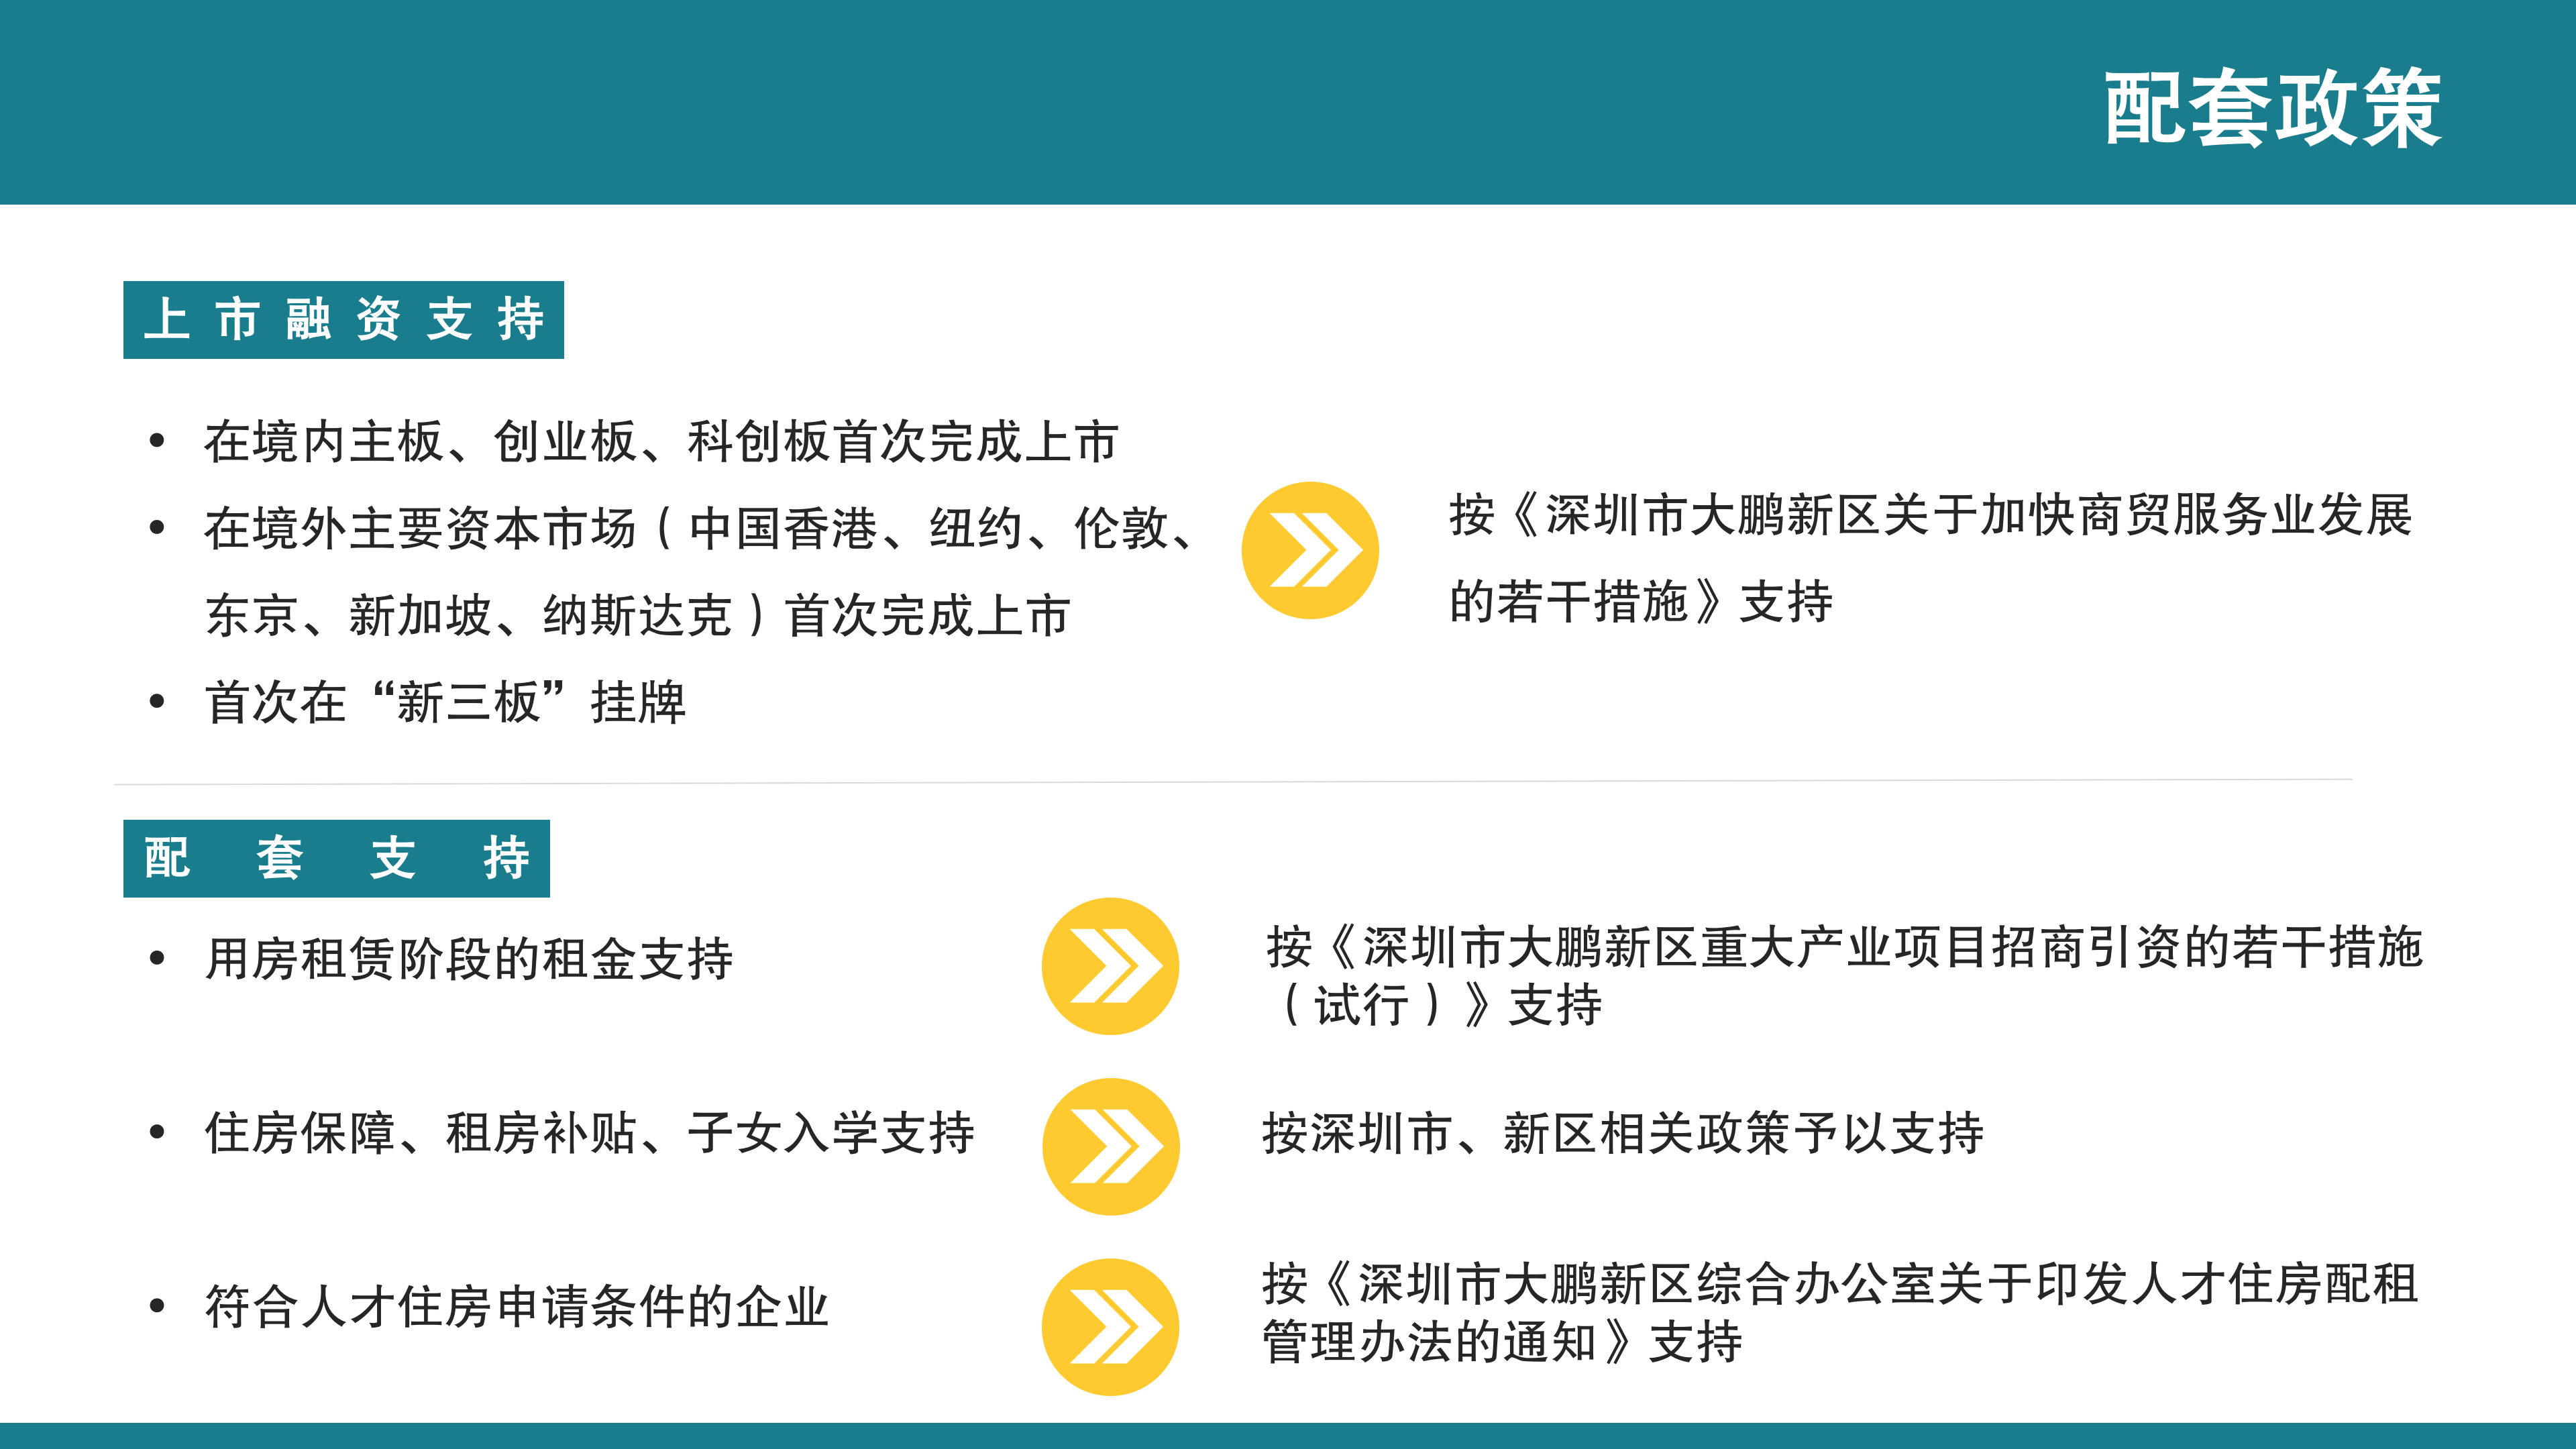 【公示版】《深圳市大鹏新区关于促进特色平台经济发展的若干措施》政策解读_13.png